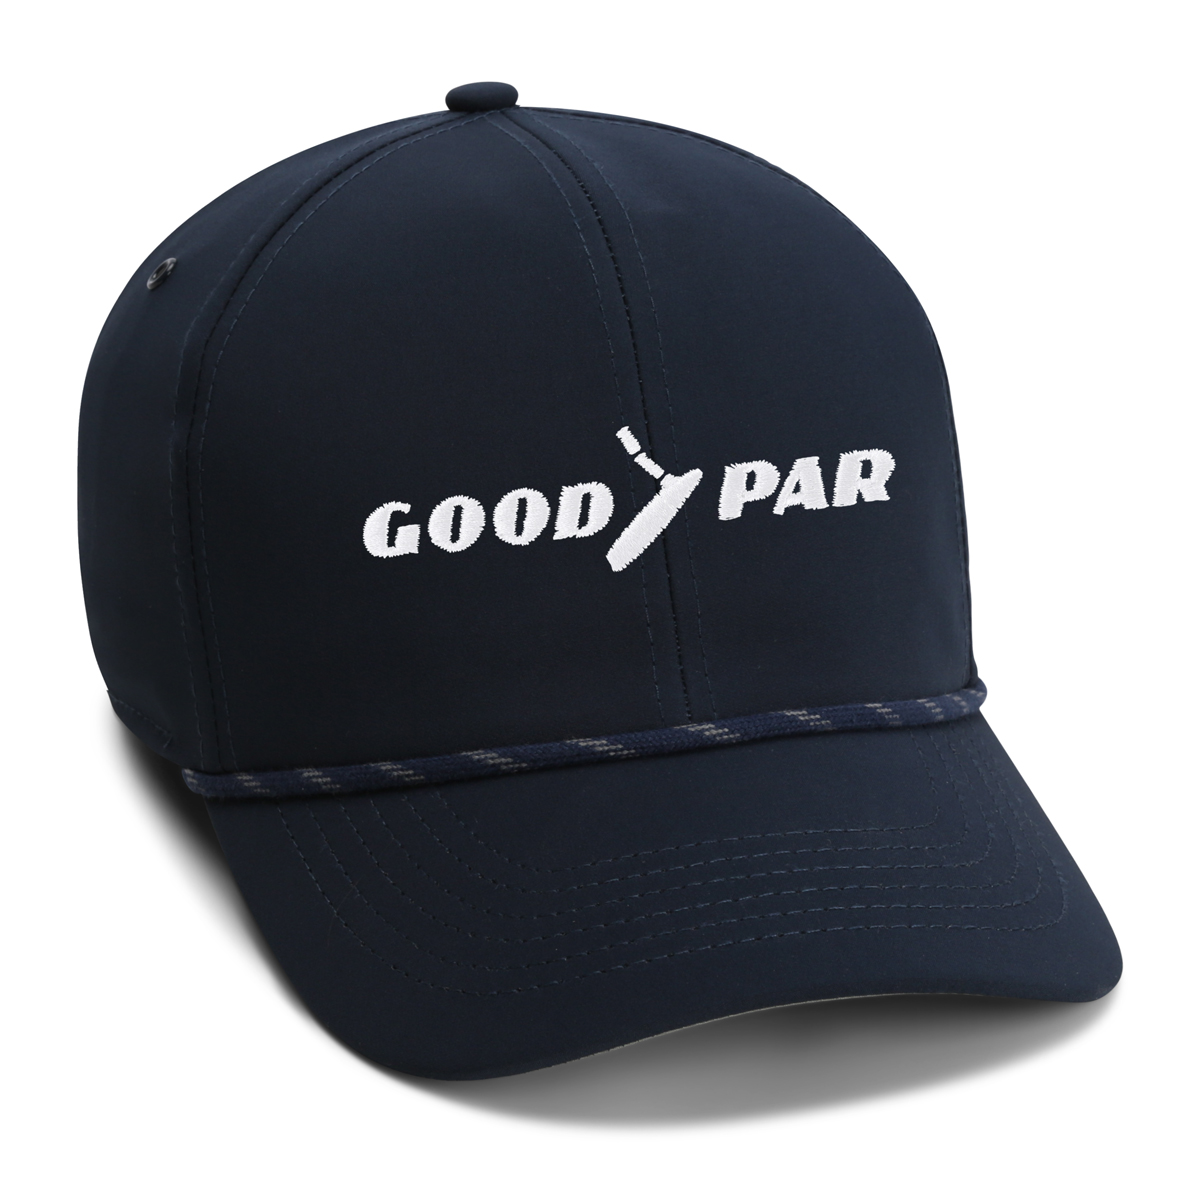 The Good par - Performance Rope Cap